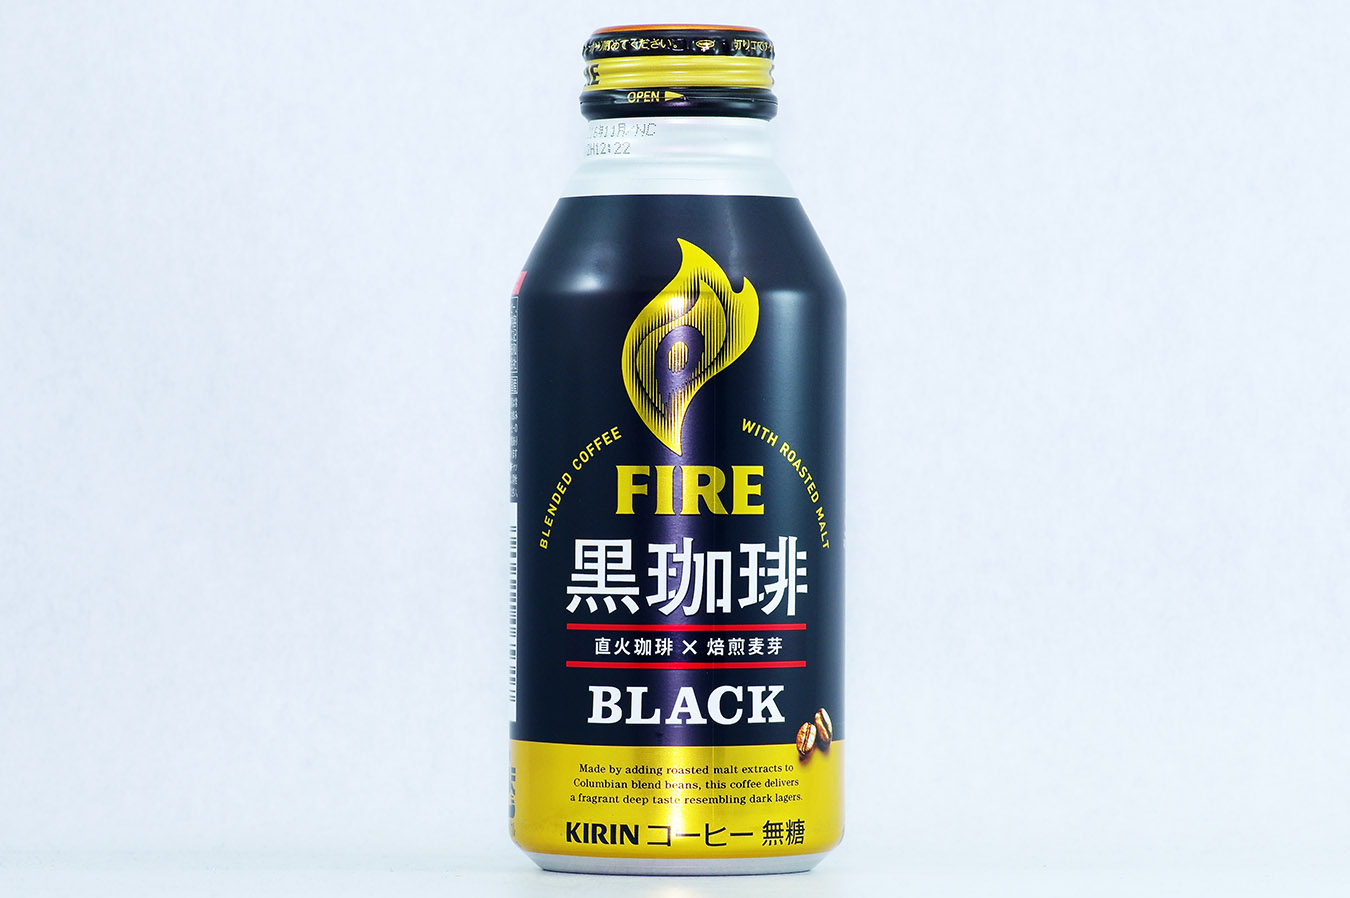 FIRE 黒珈琲 ブラック 2016年2月